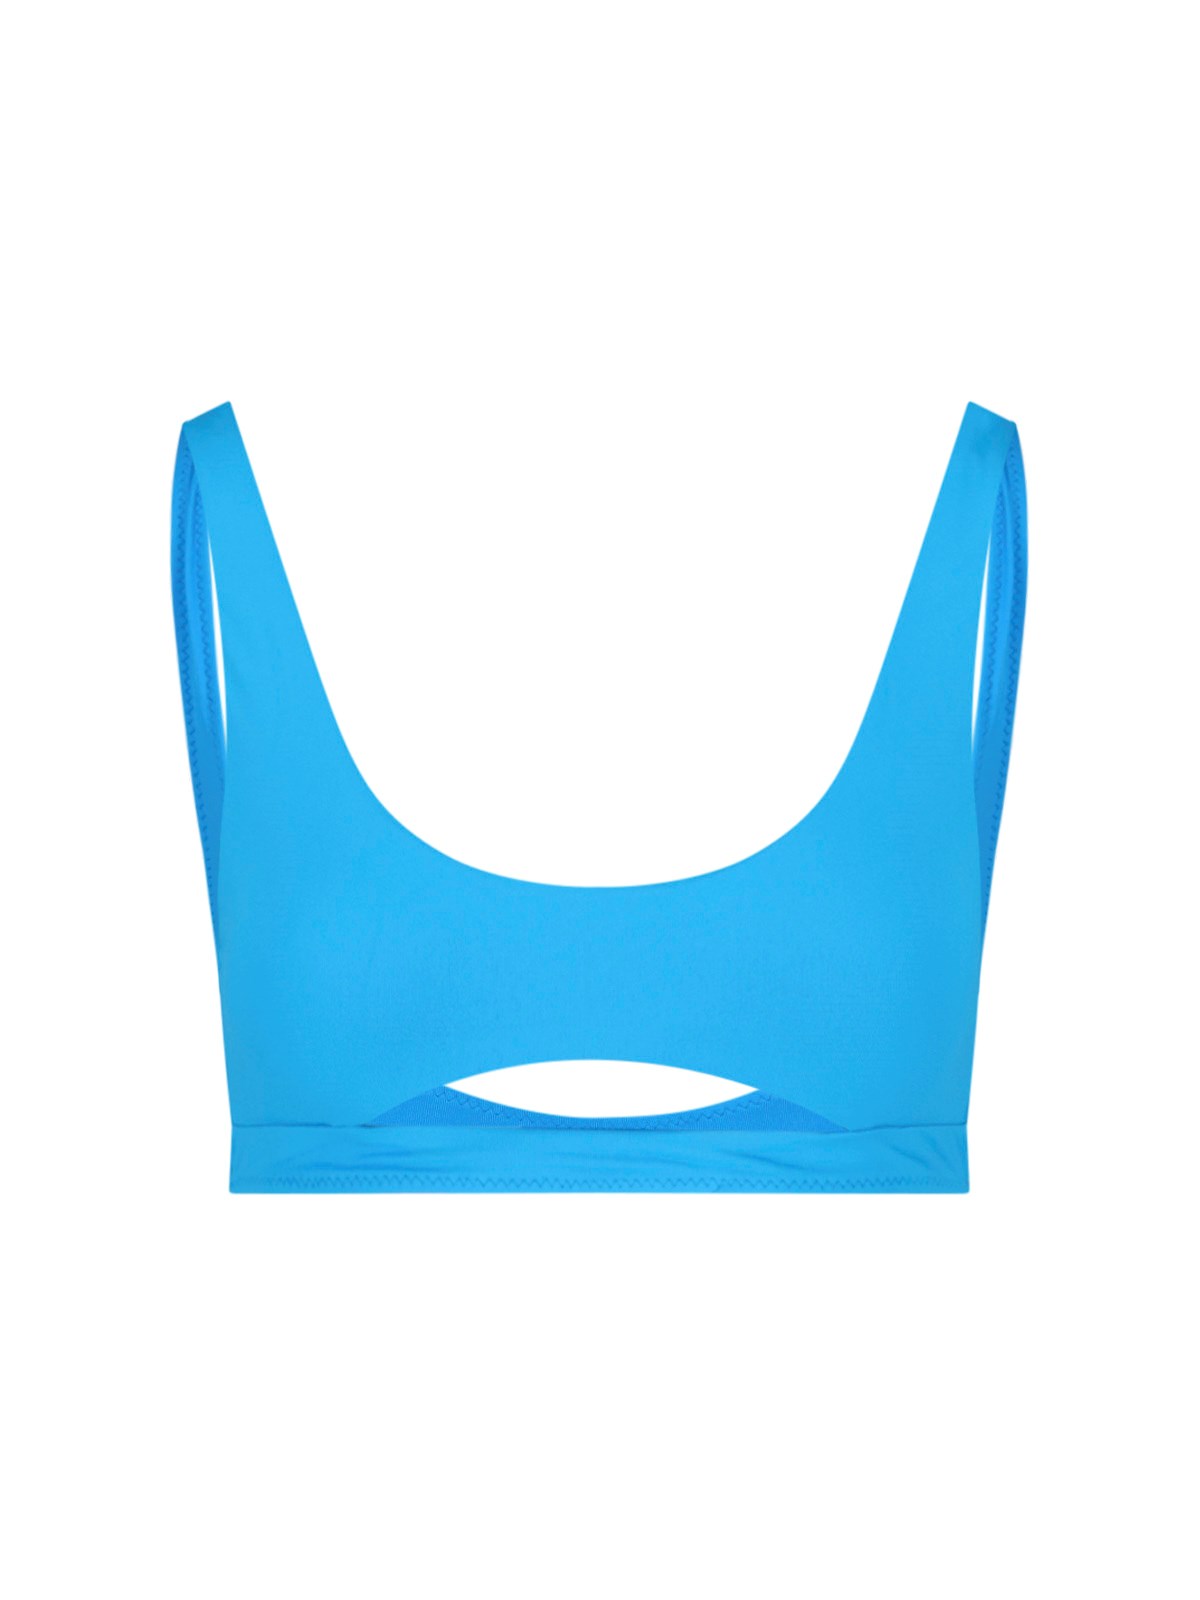 Matinee 'zaira' Bikini Top Sugar Capsule In Light Blue